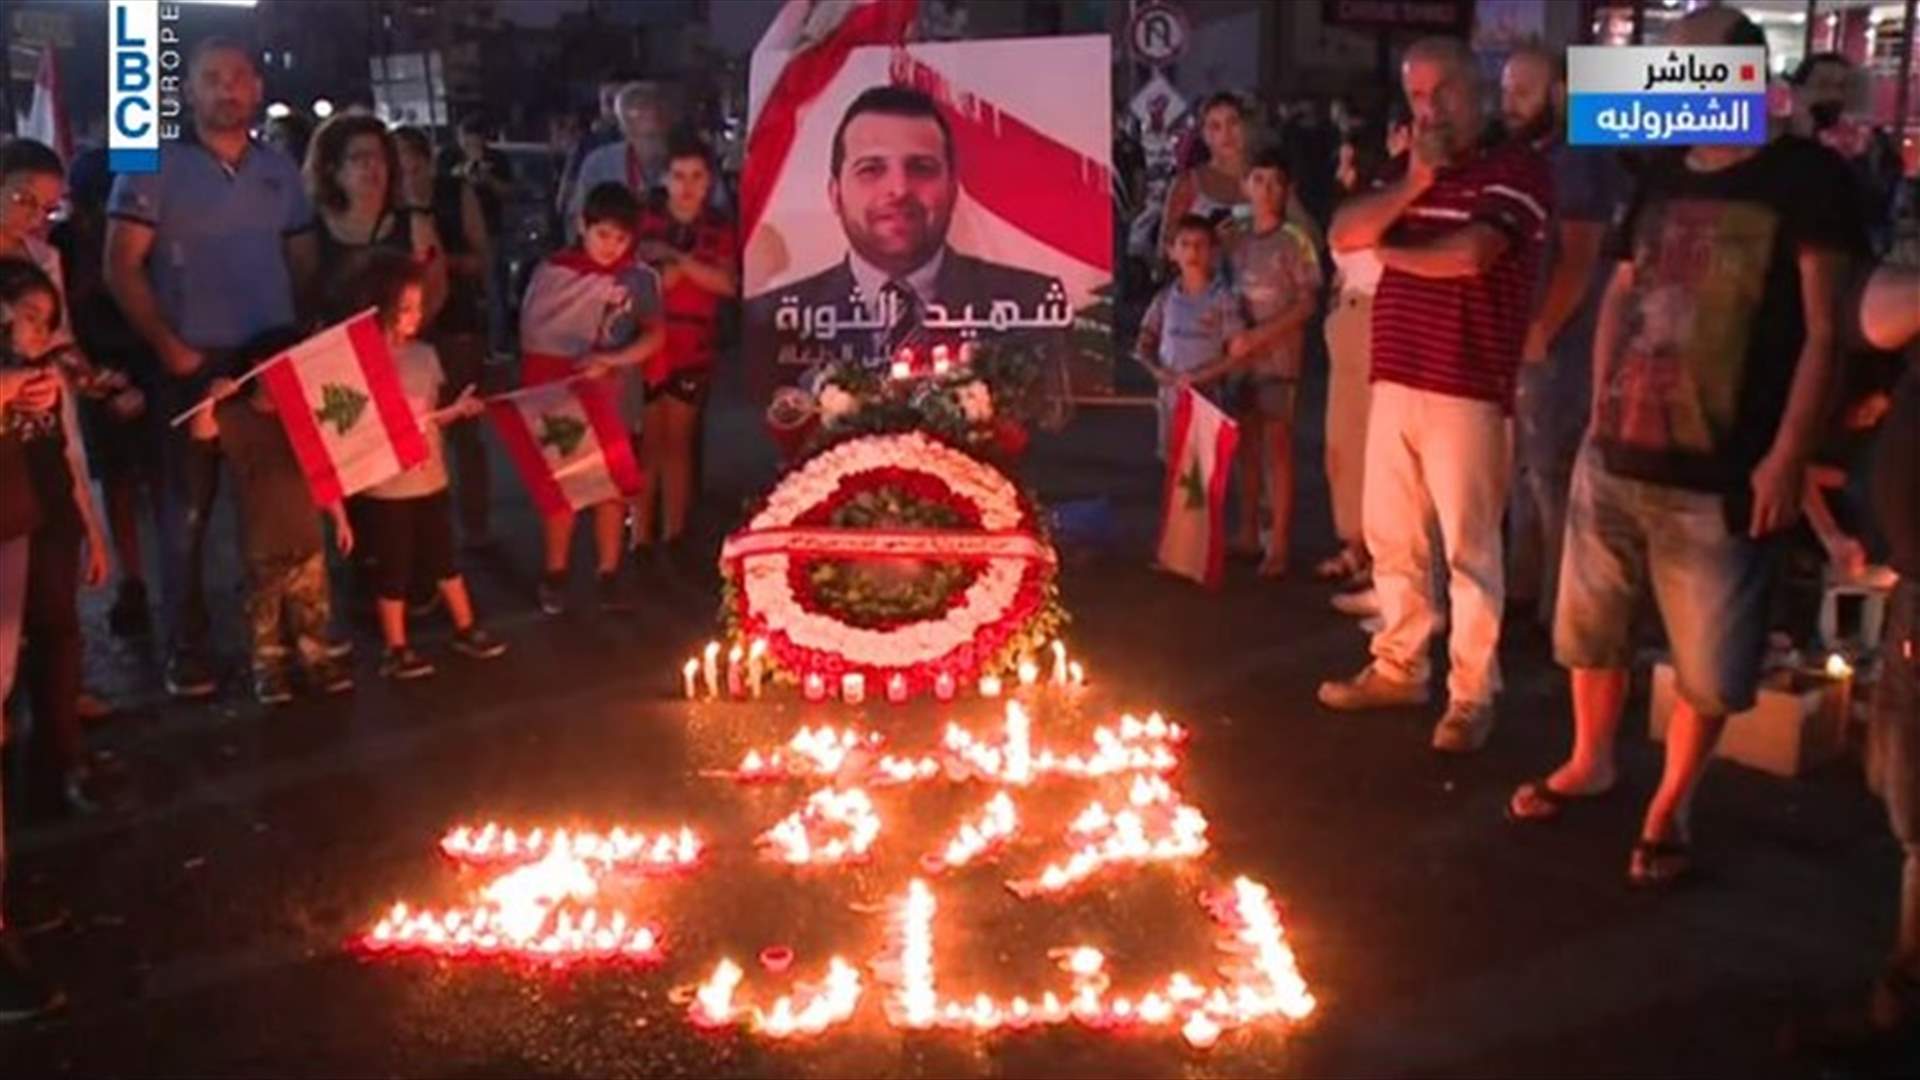 إضاءة الشموع عن روح شهيد الثورة علاء أبو فخر في الشوفروليه (فيديو)